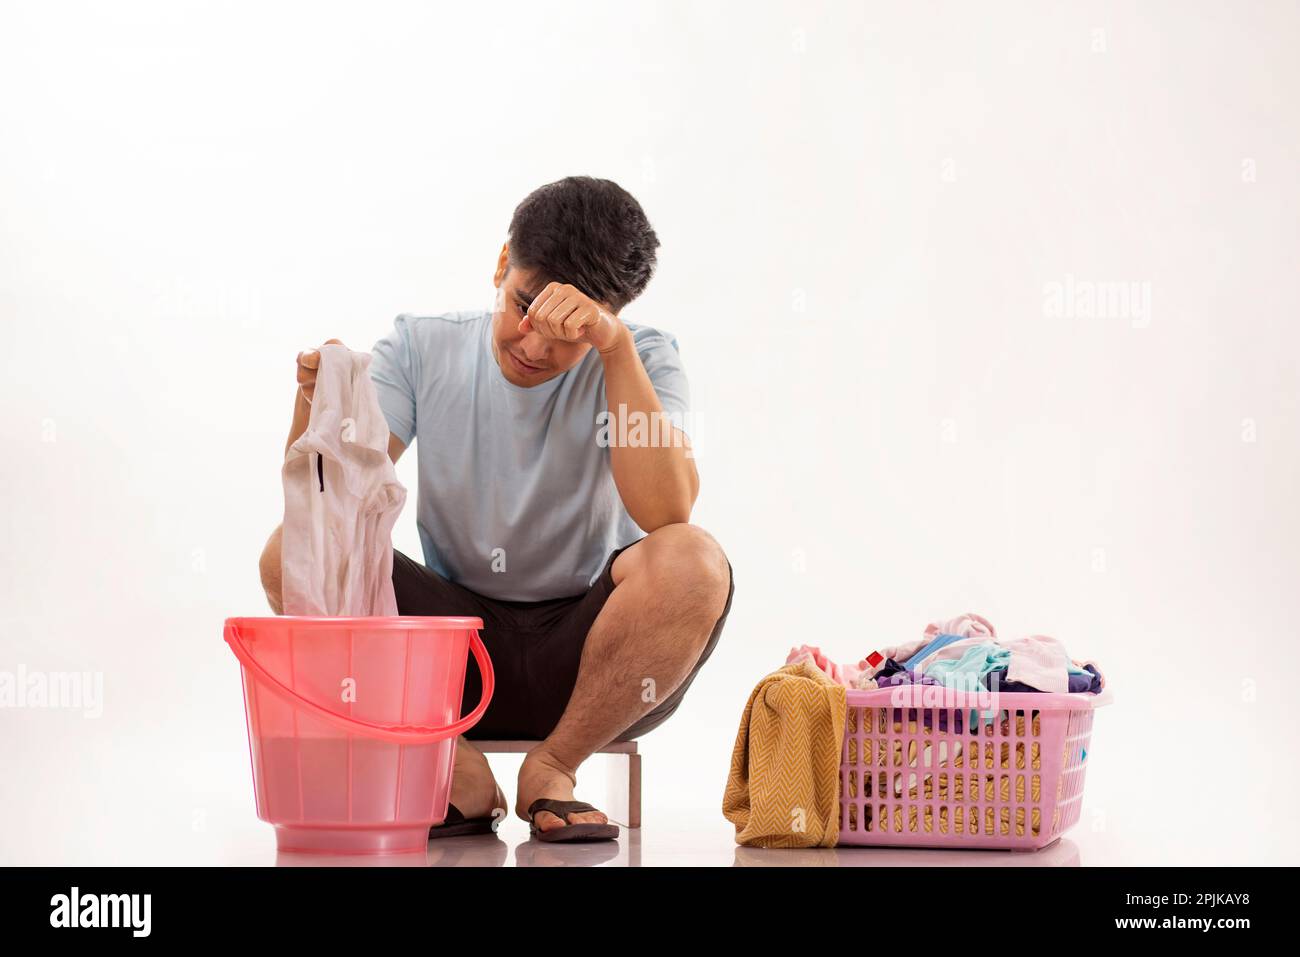 Porträt eines jungen Mannes, der seine Wäsche von Hand wäscht Stockfoto